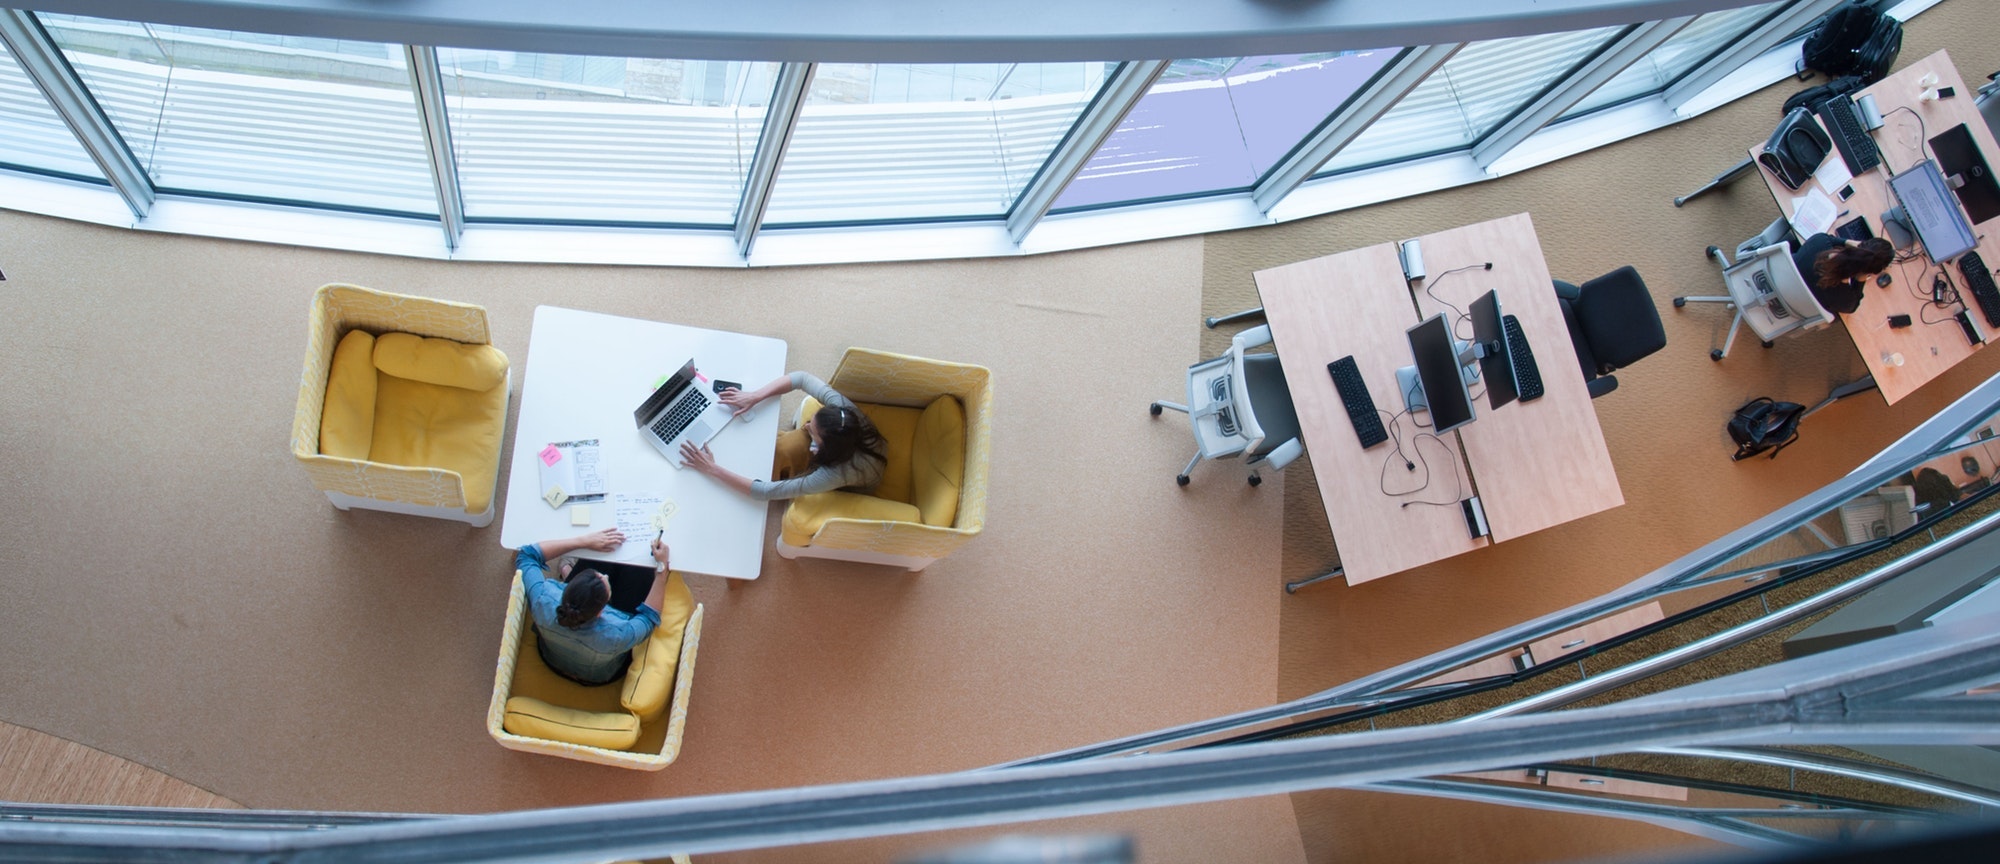 Een moderne, flexibele kantoor-omgeving, van bovenaf gezien